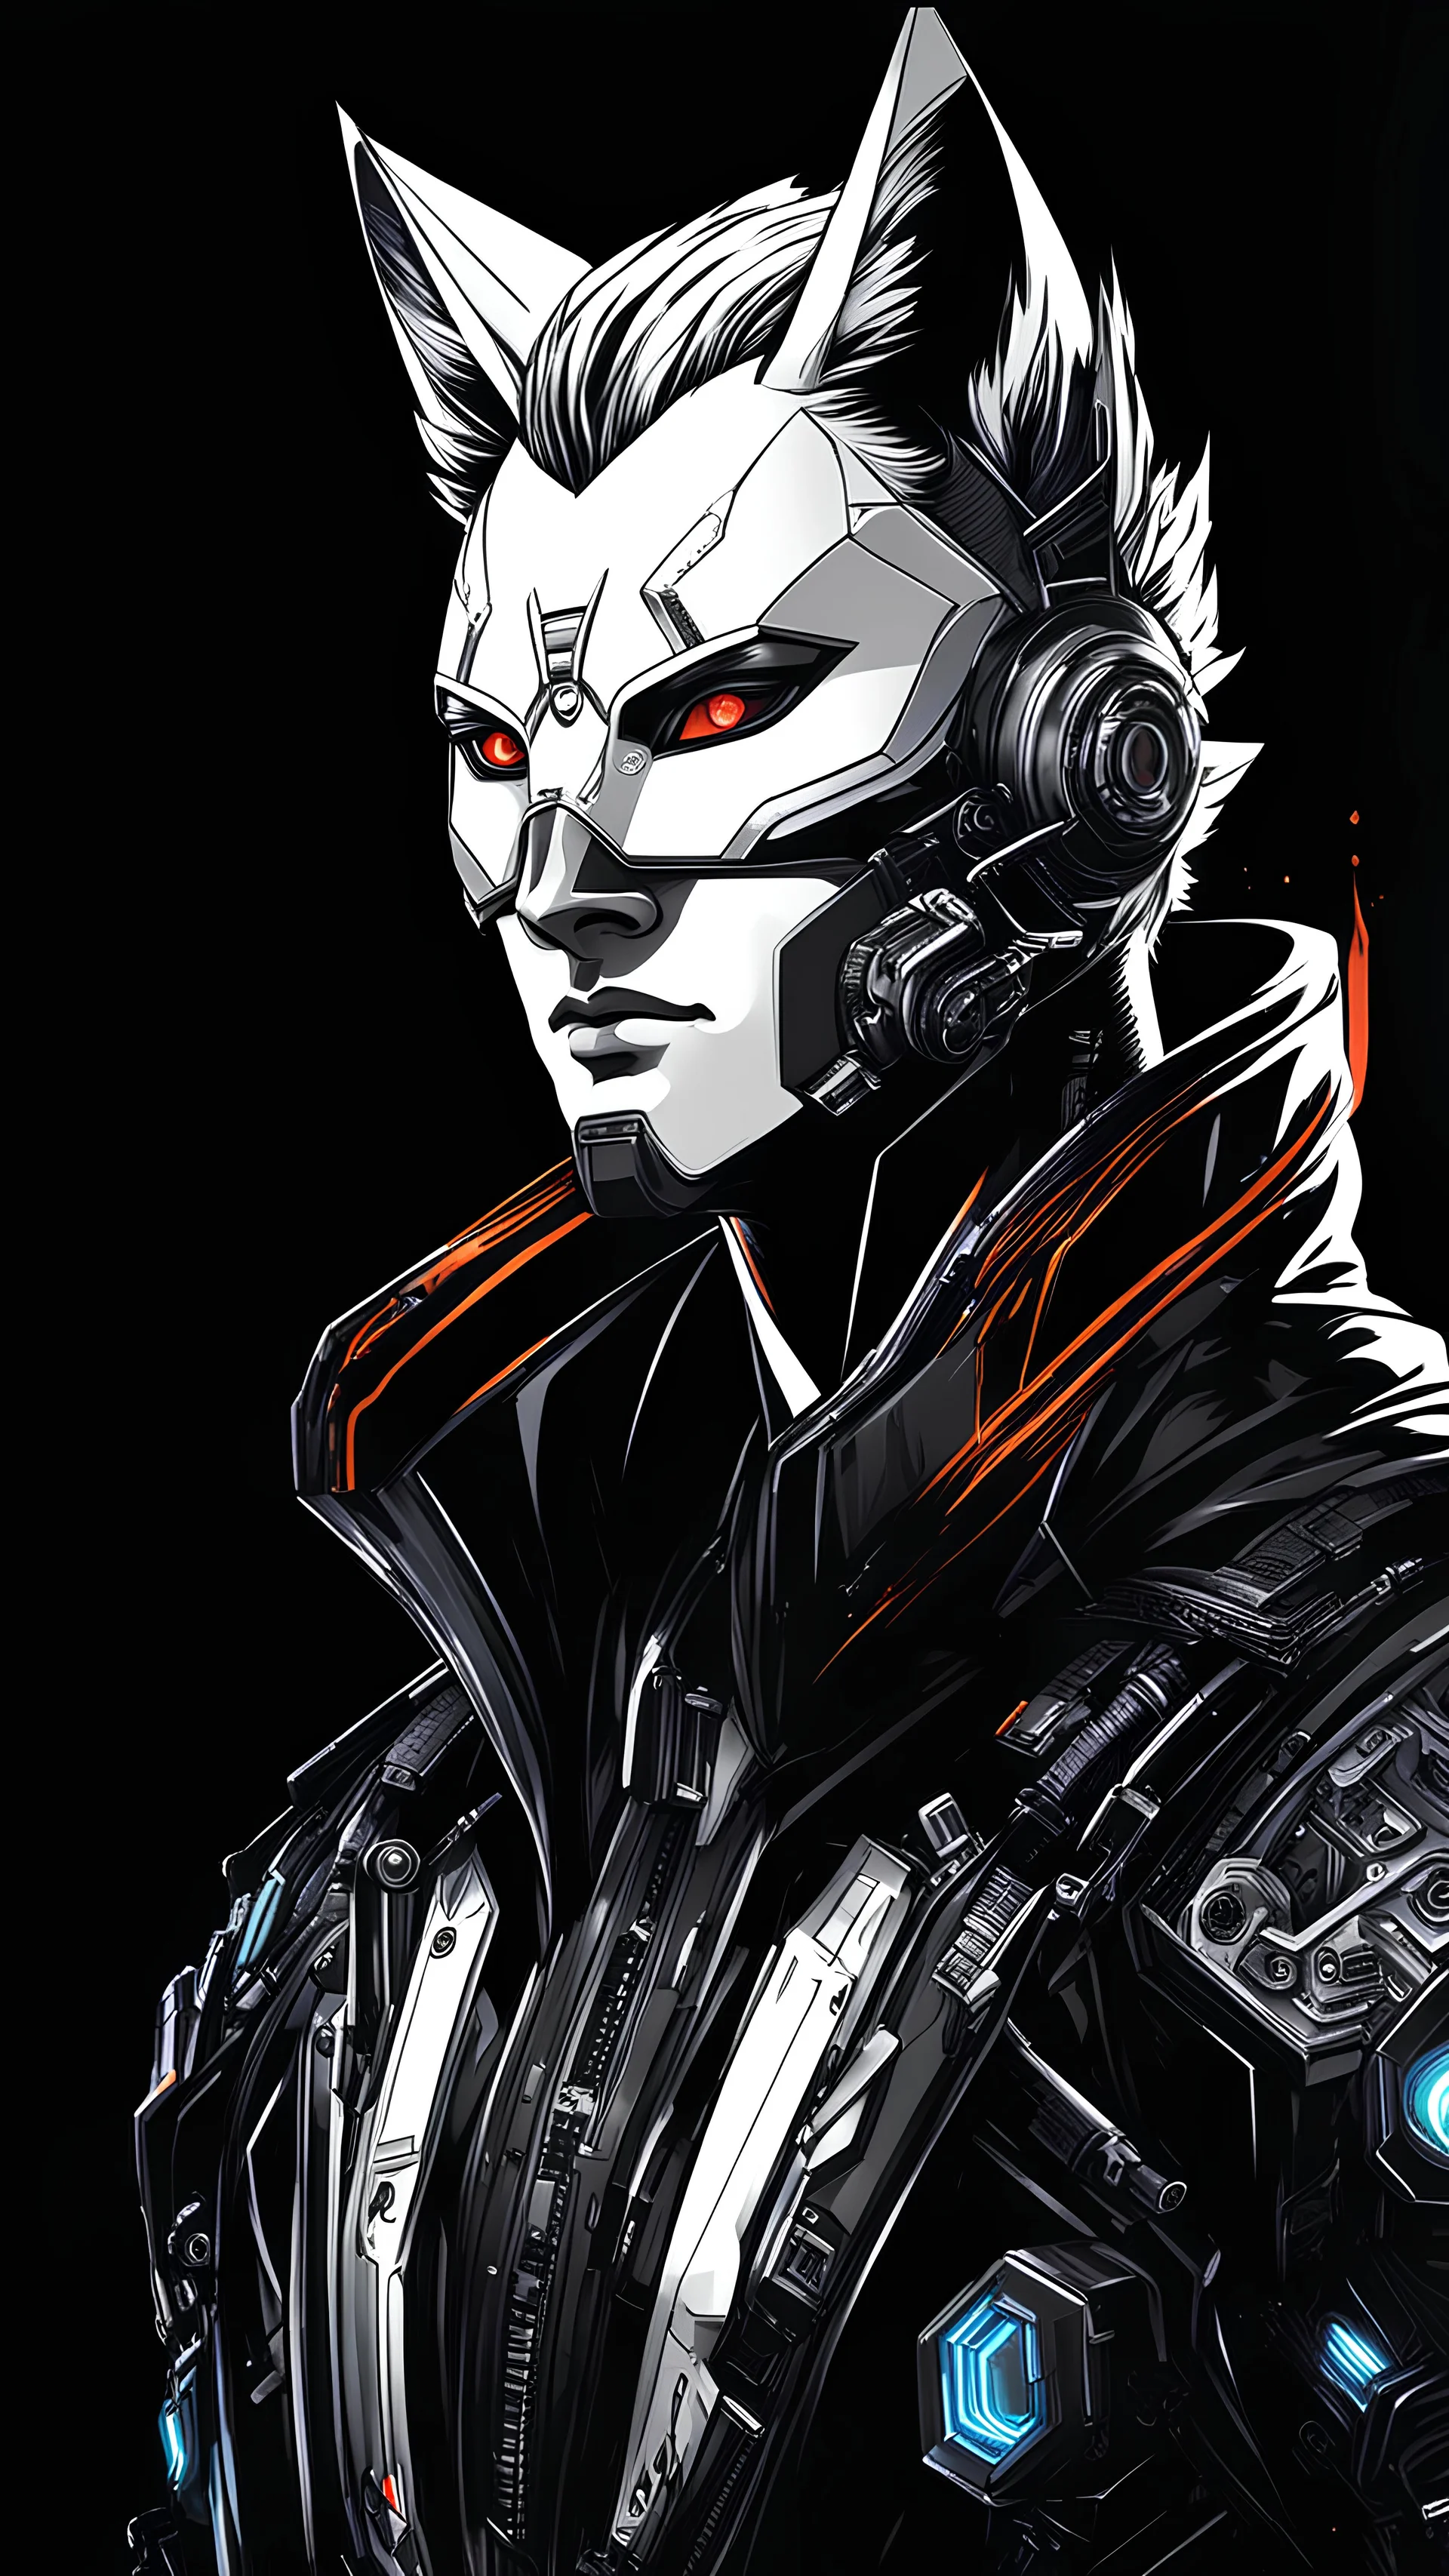 Kitsune hombre cyberpunk retrato, аrte lineal, fondo negro, cuerpo completo retrato